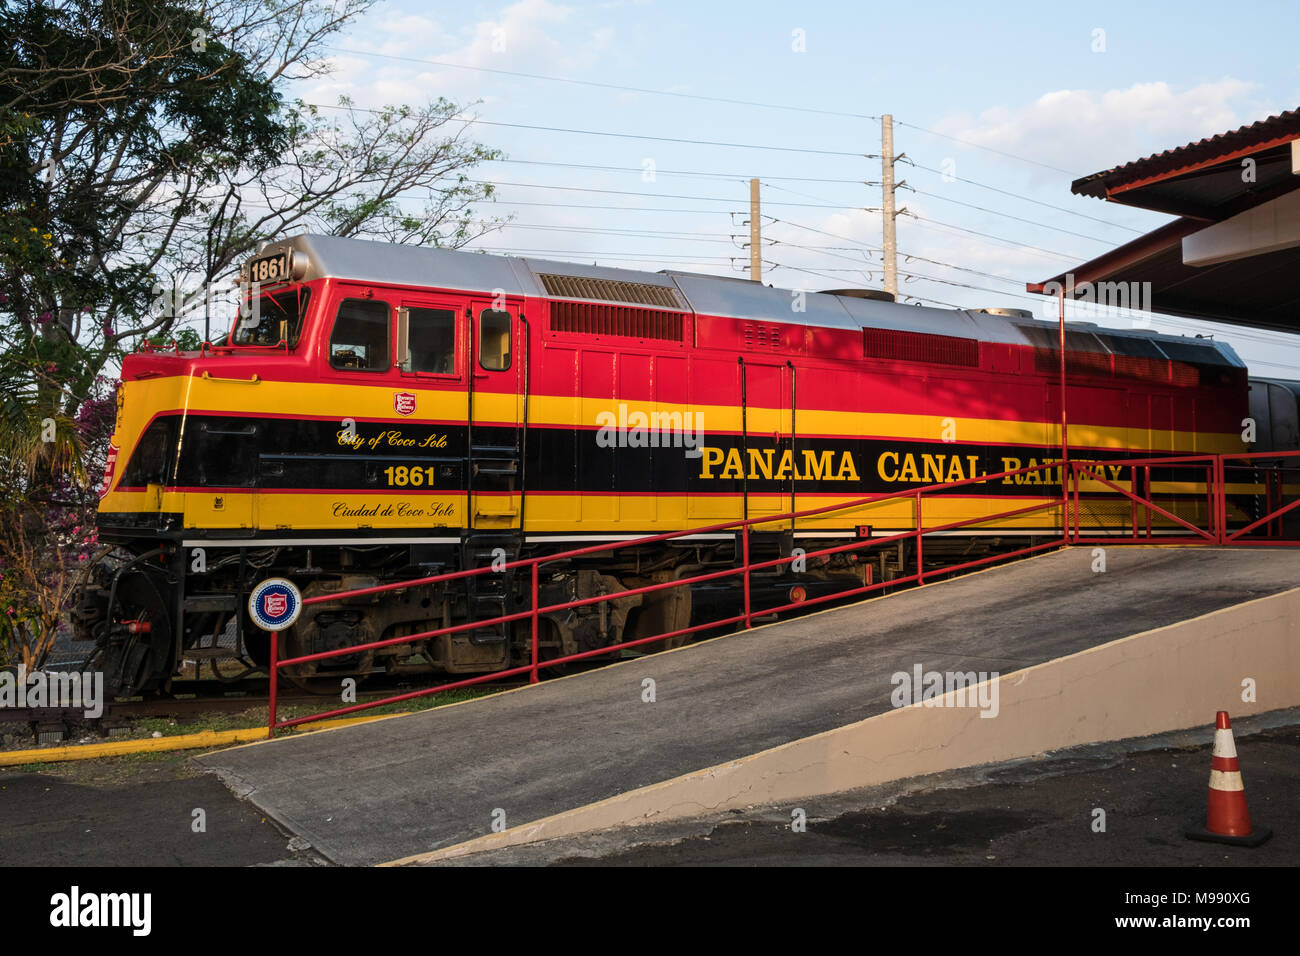 Ciudad de Panamá, Panamá - marzo 2018: La locomotora del Ferrocarril del Canal de Panamá, conectando la ciudad de Panamá y Colón. Foto de stock